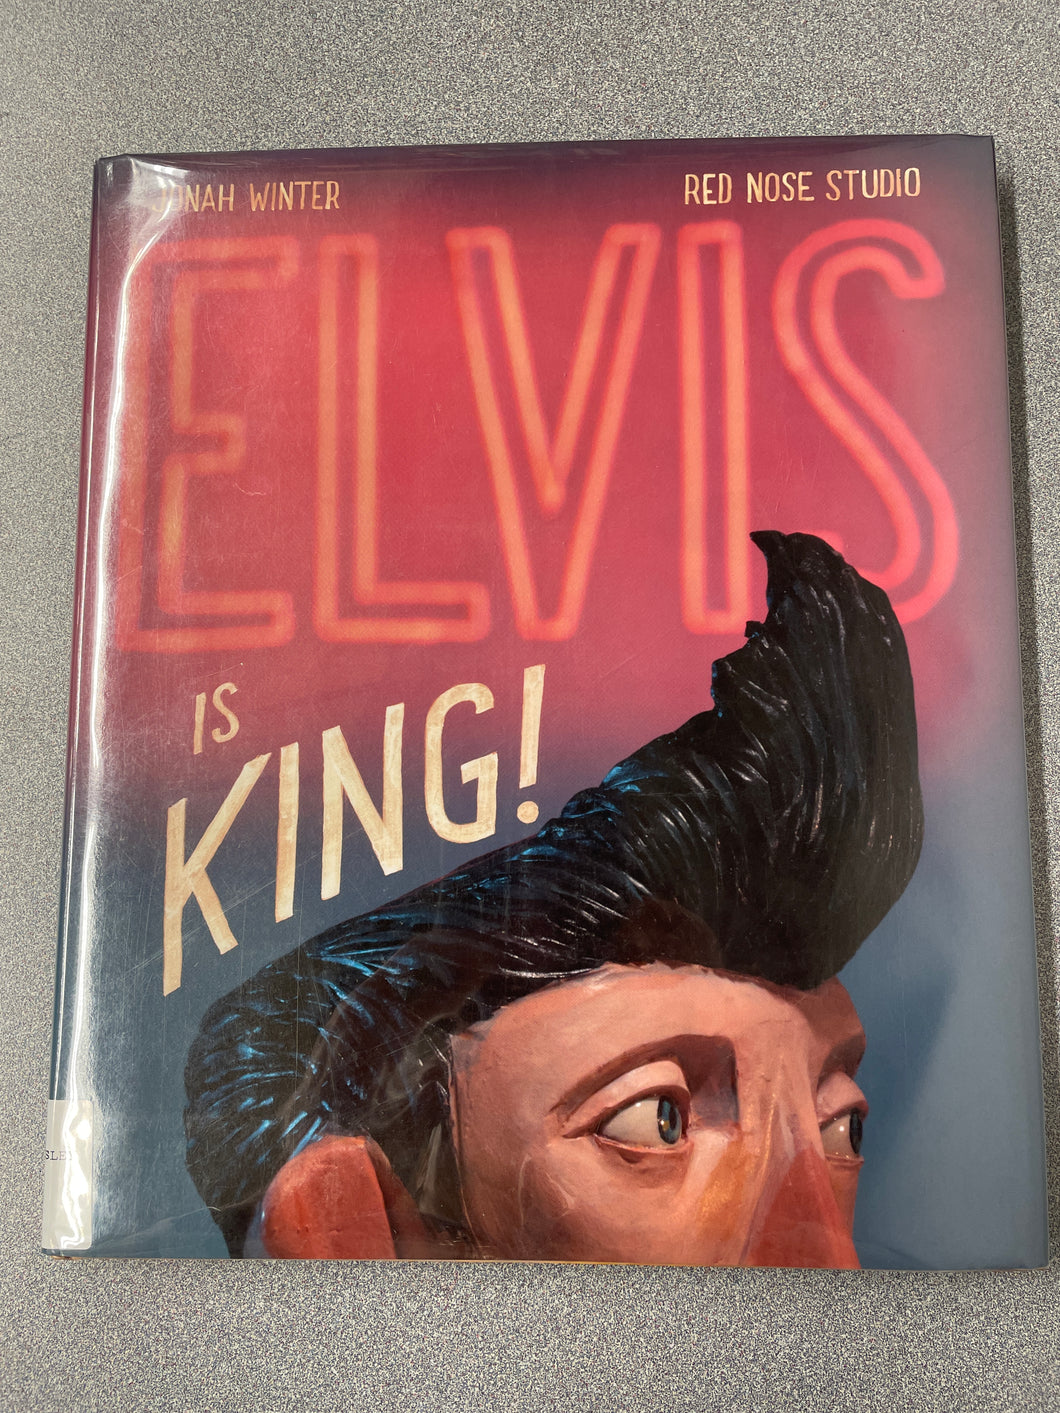 Winter, Jonah, Elvis is King! [2019] CP 2/24